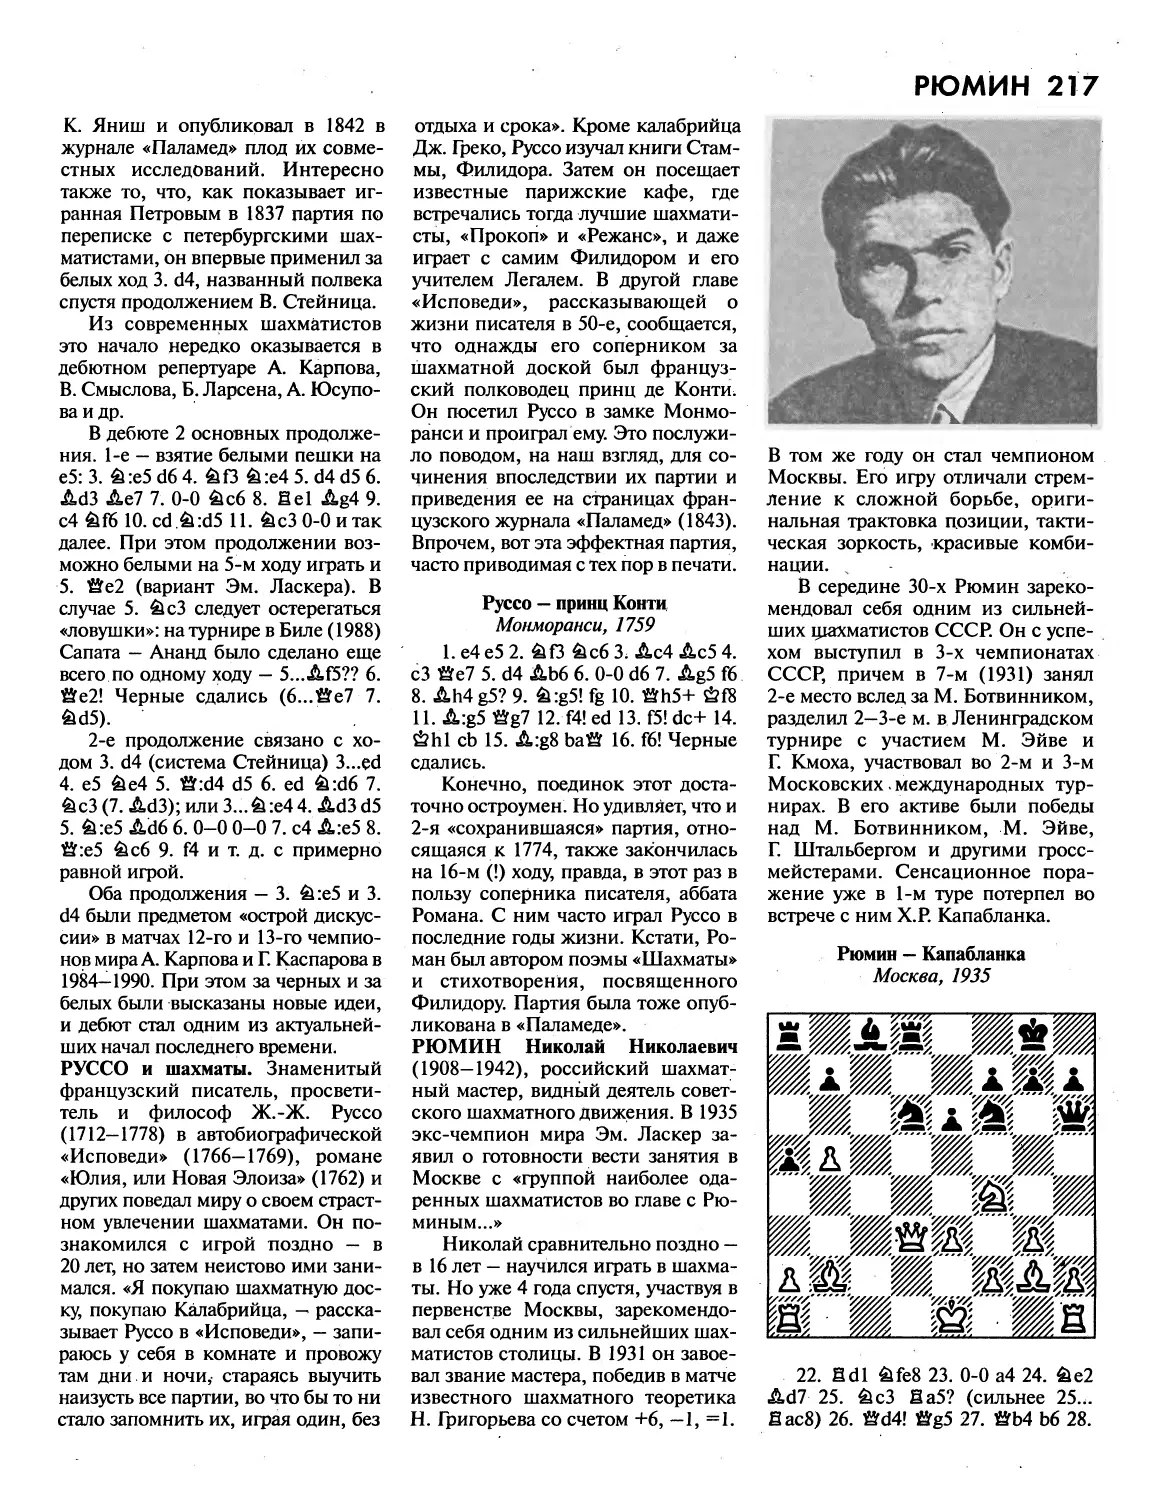 Руссо и шахматы
Рюмин Н.Н.